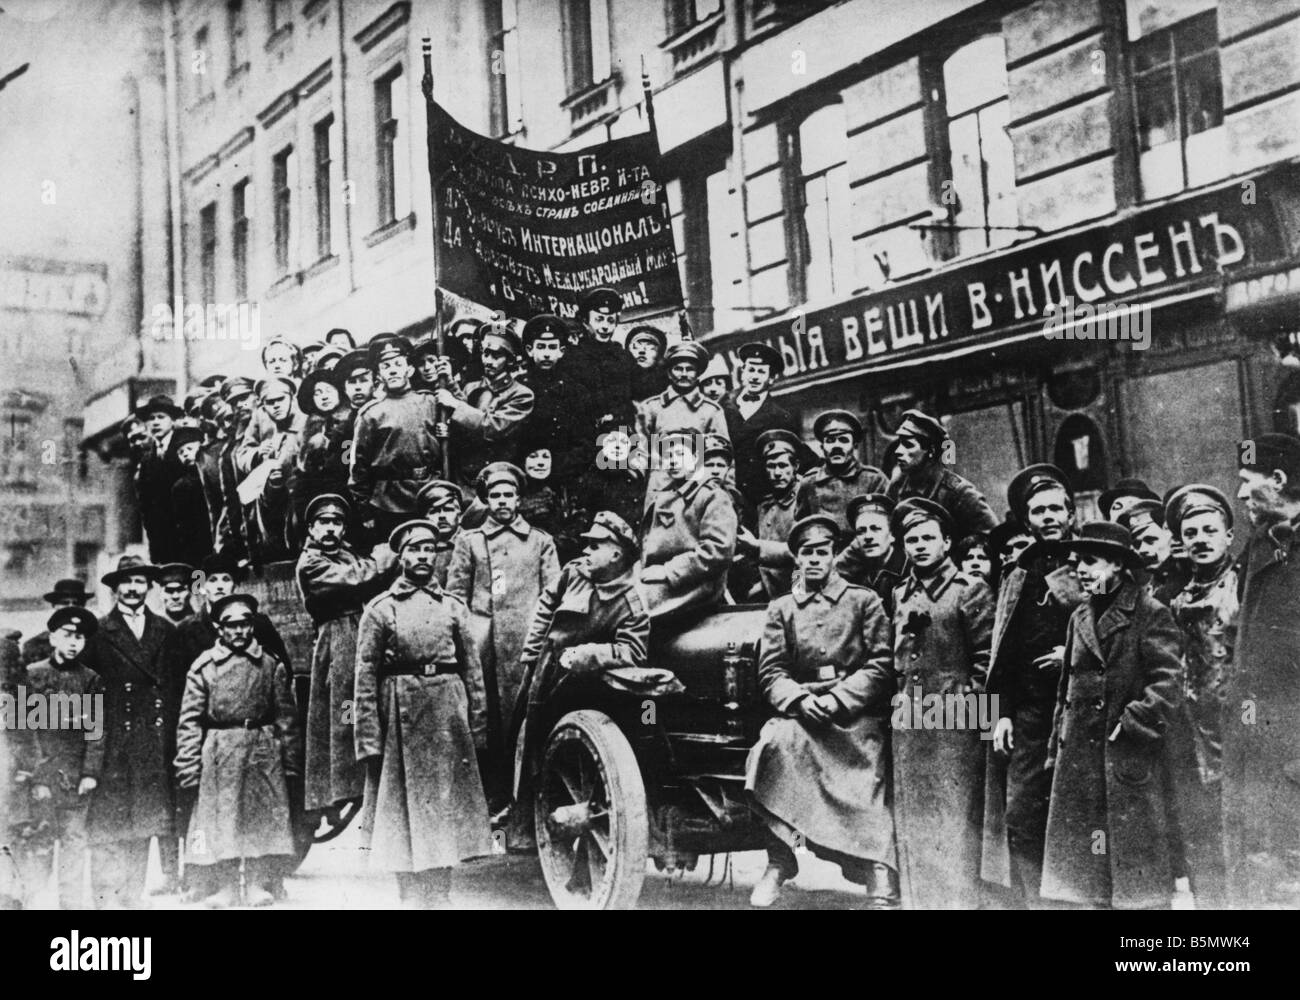 9ème 1917 0 0 A3 1 La Russie de démonstration 1917 Révolution Russe 1917 Photographie de démonstration Banque D'Images